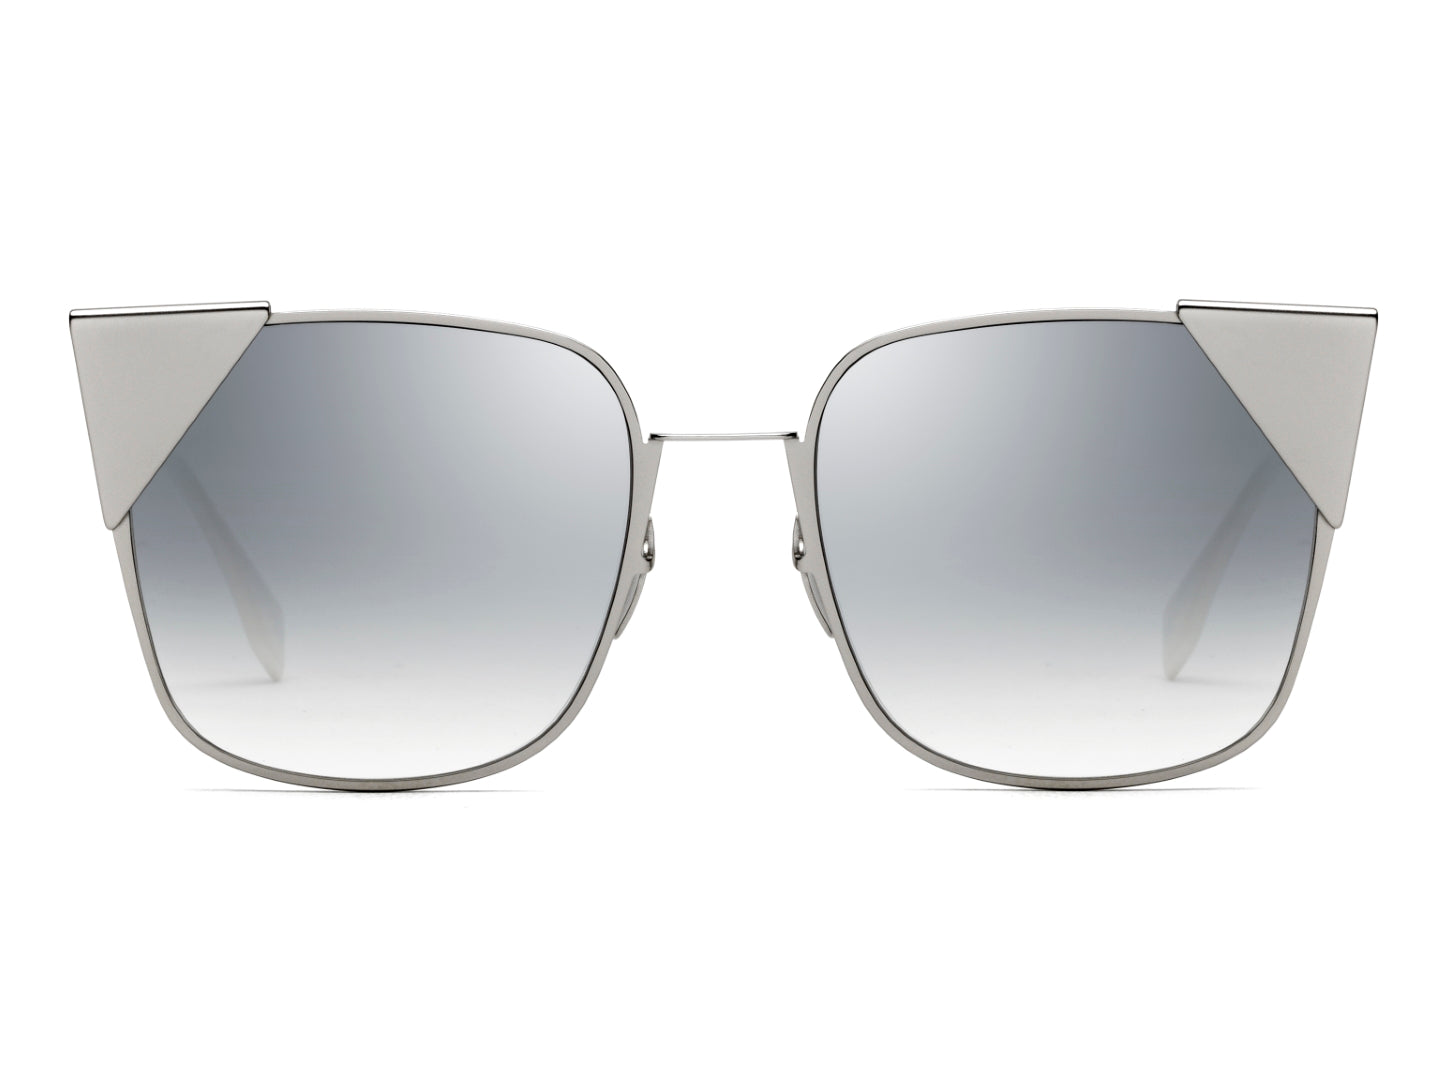 FENDI WOMAN SQUARE Sunglasses-FF 0191/S Size 55